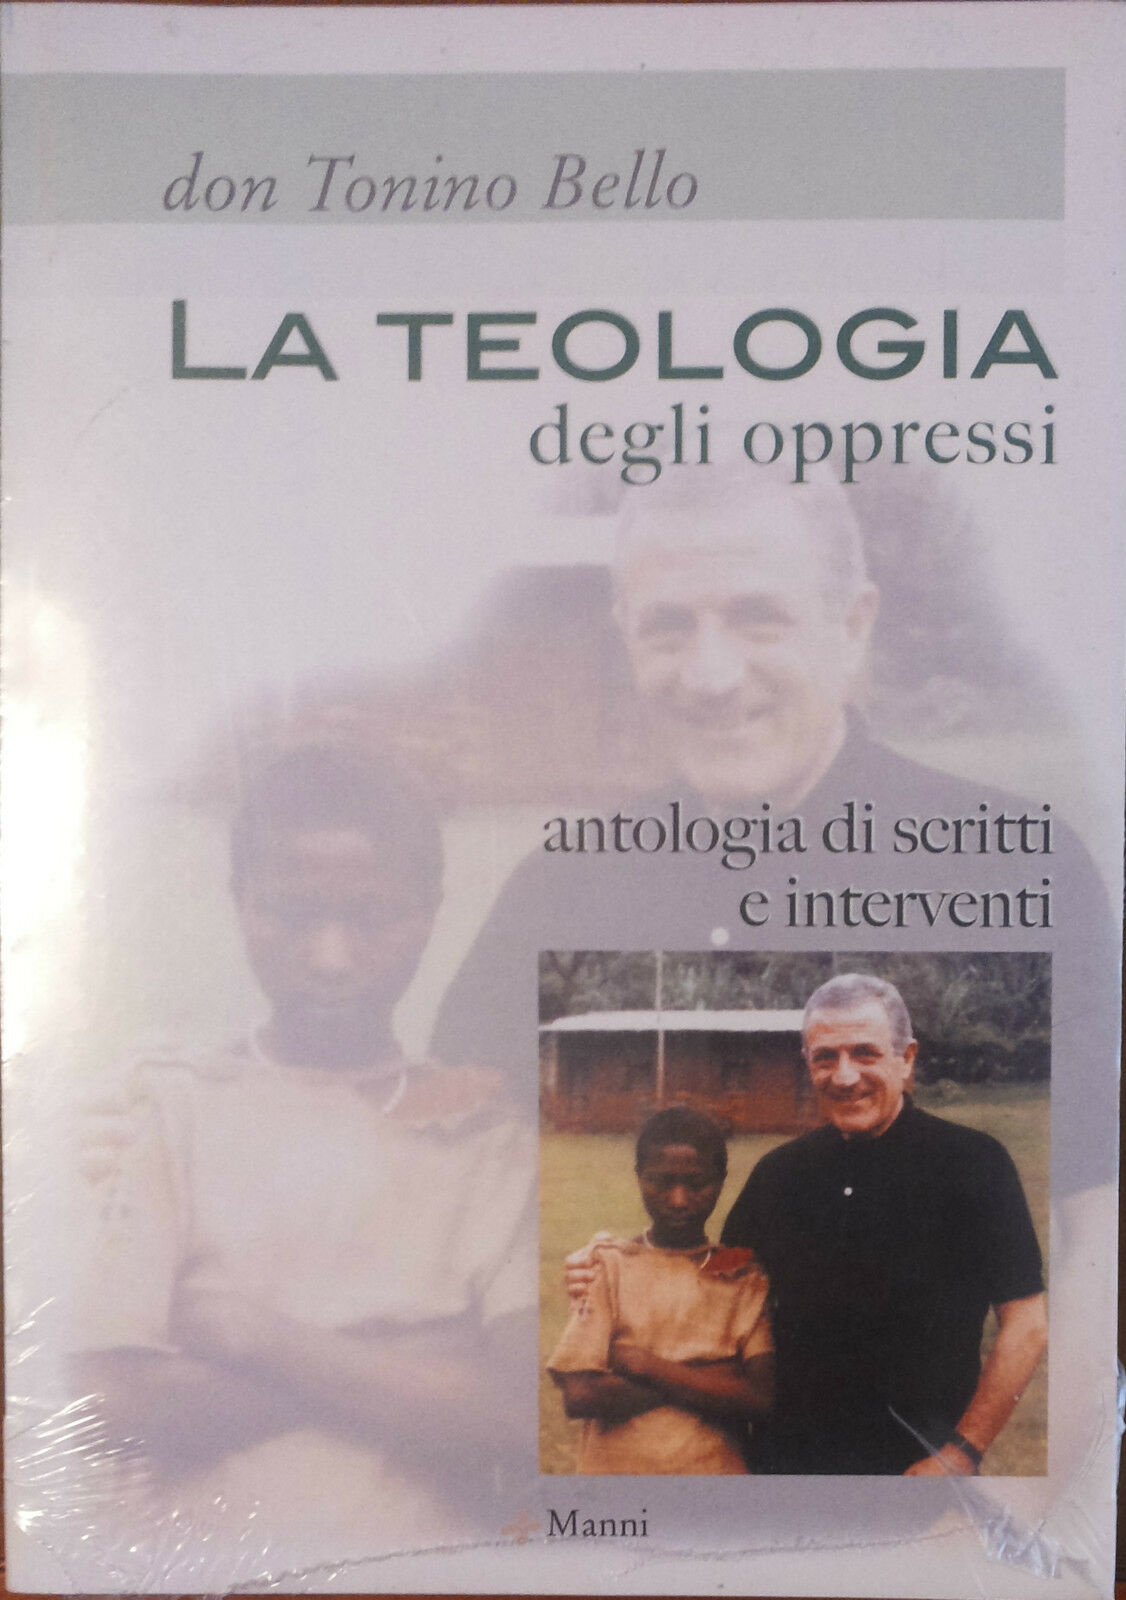 La teologia degli oppressi - Tonino Bello - Manni,2003 - A